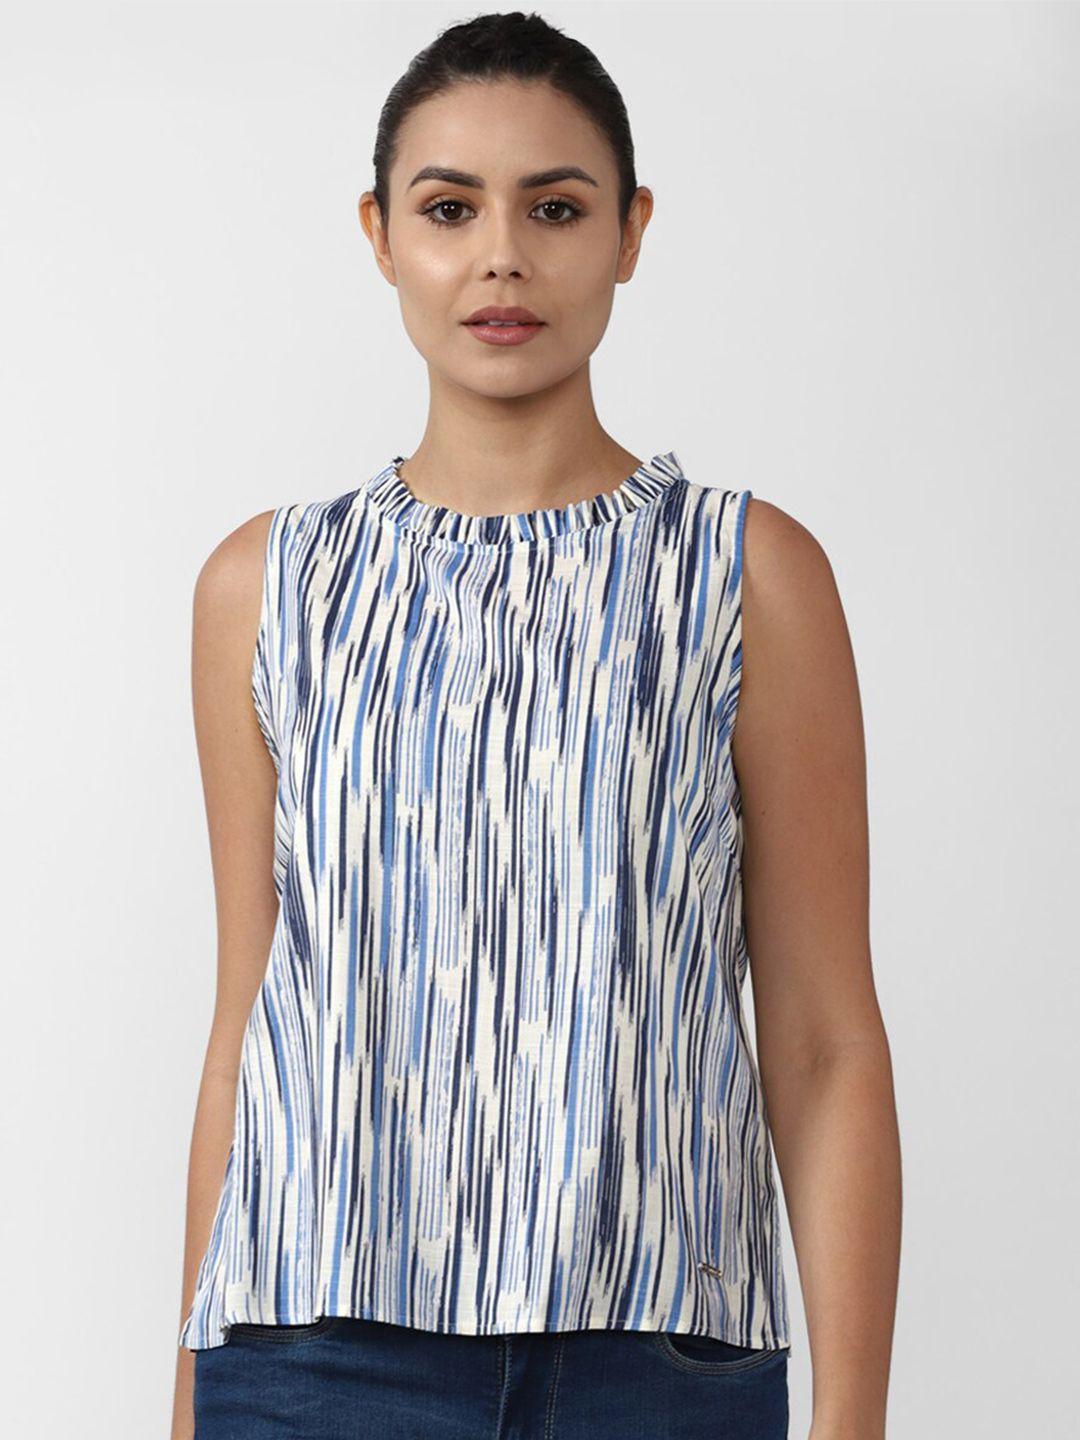 van heusen woman blue & white striped top